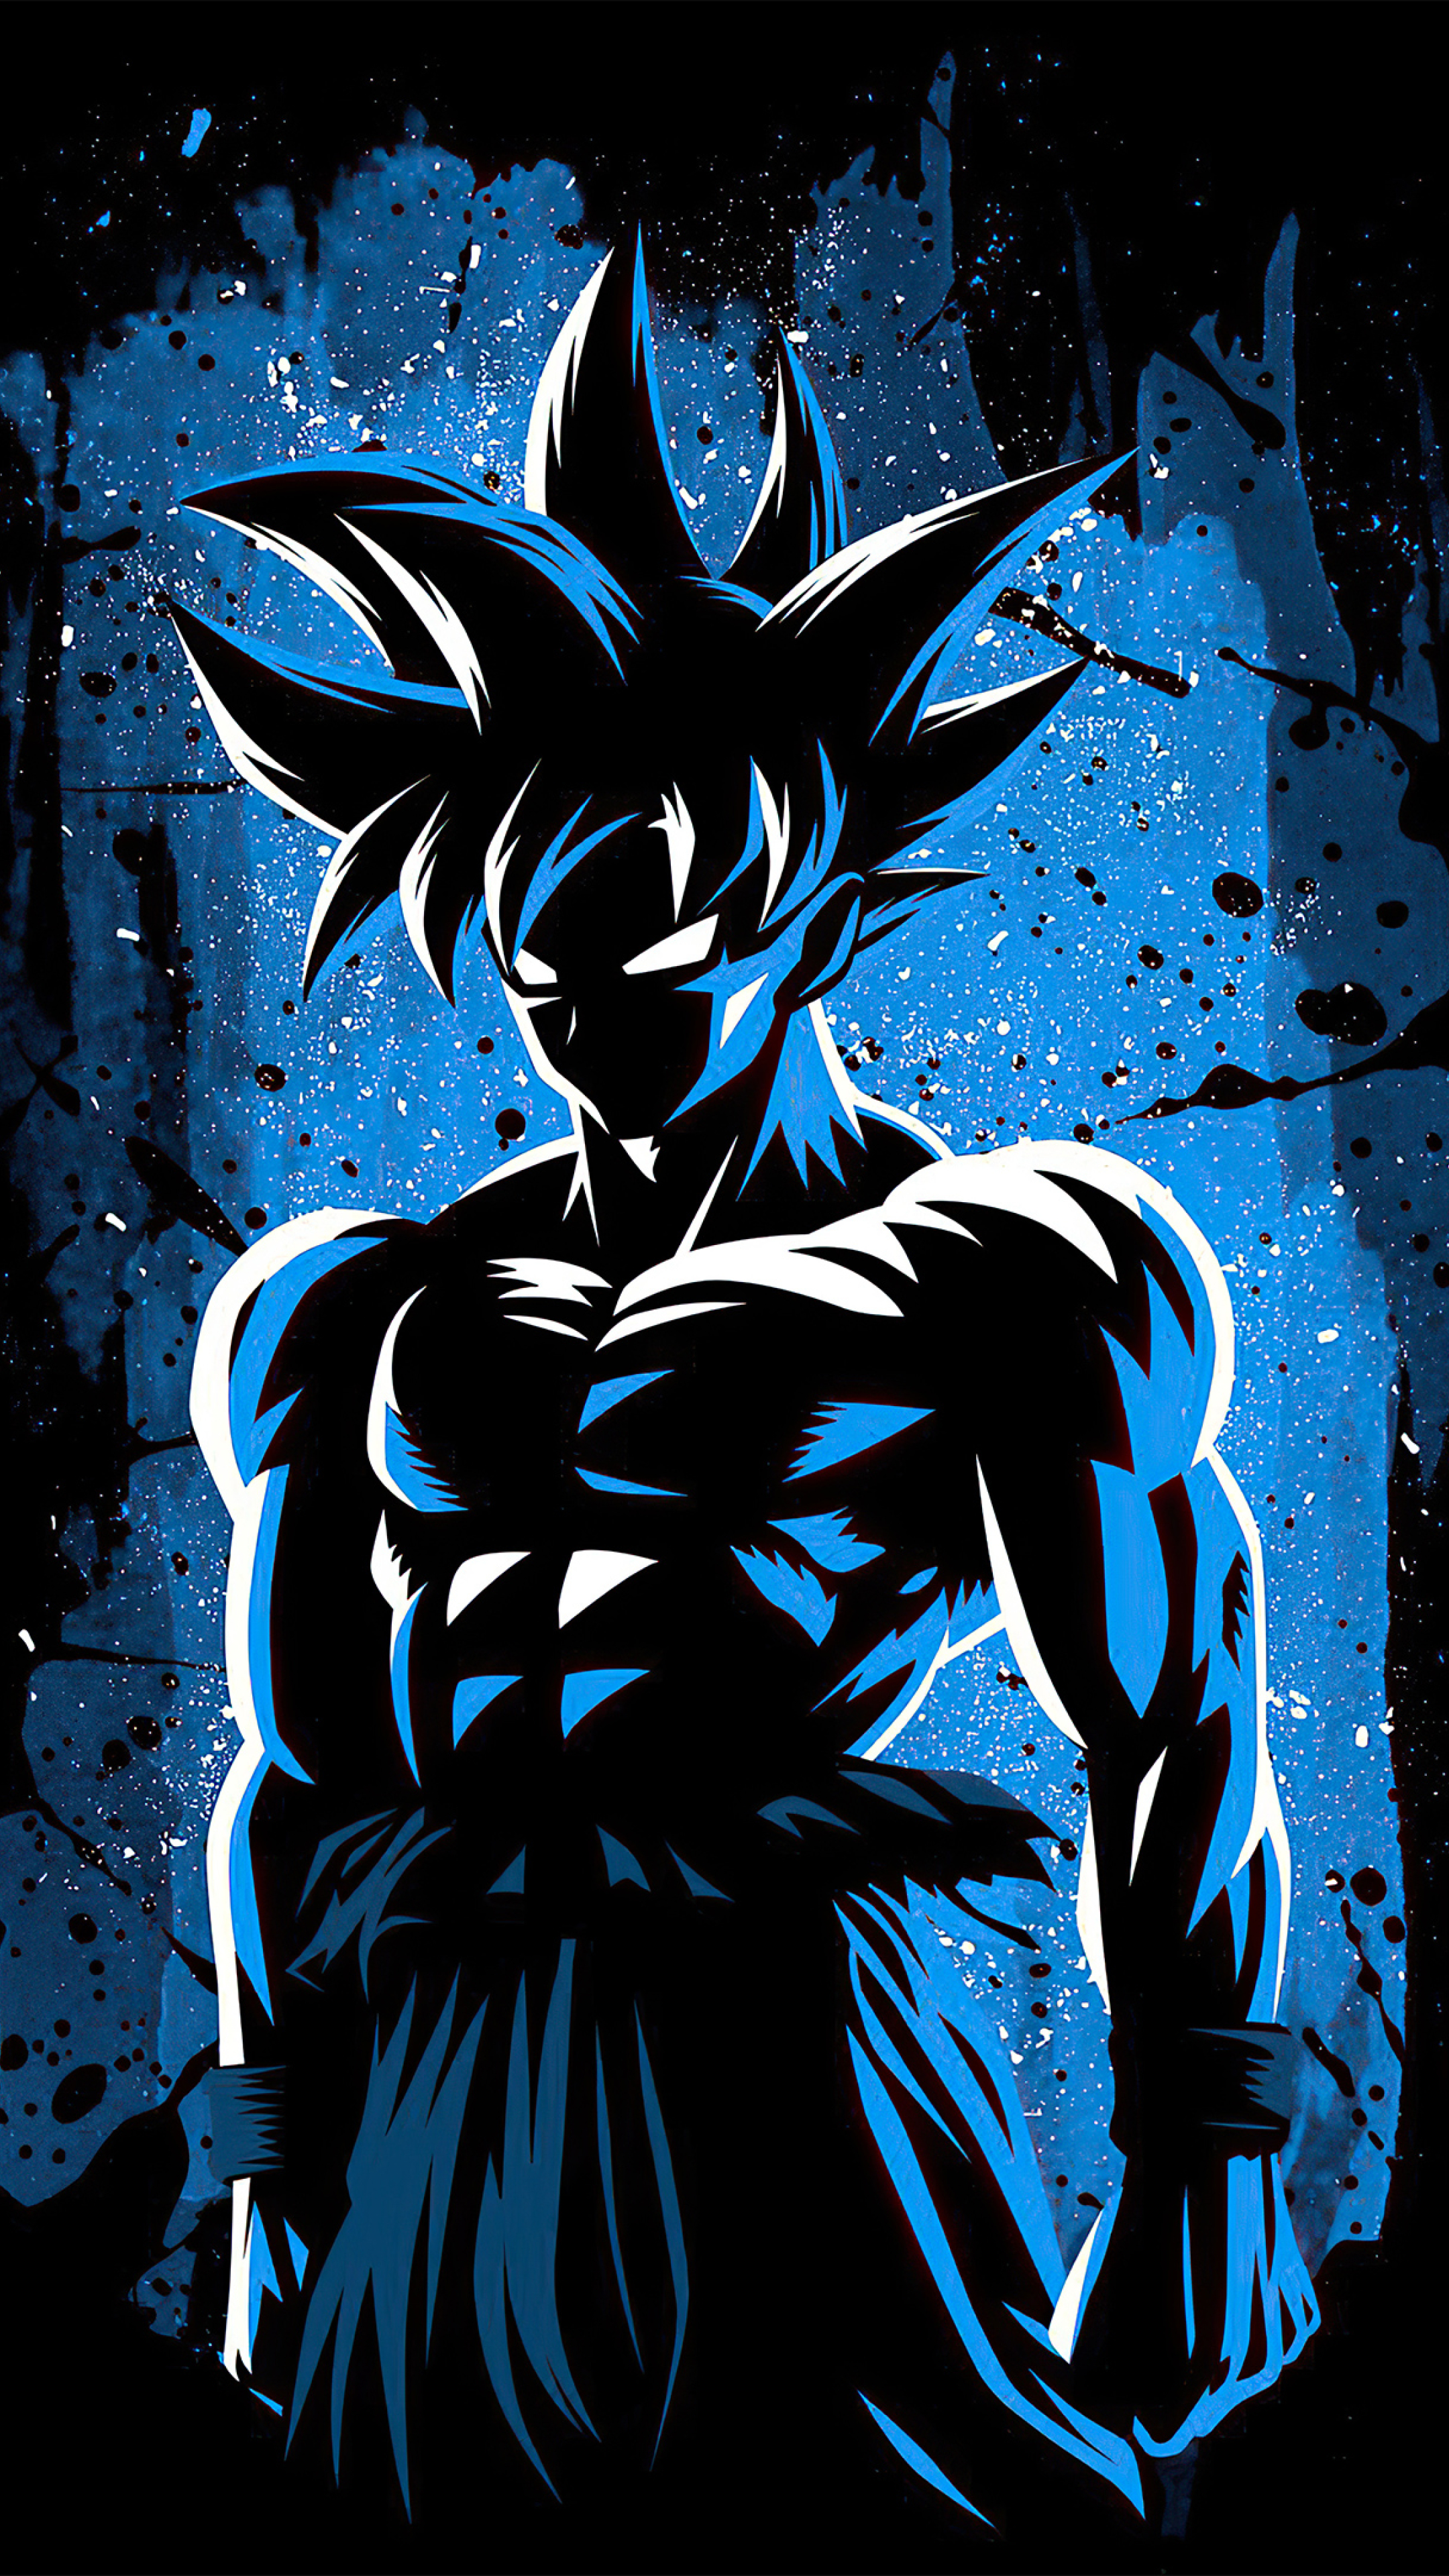 Goku UI Wallpapers - Top Free Goku UI Backgrounds - WallpaperAccess